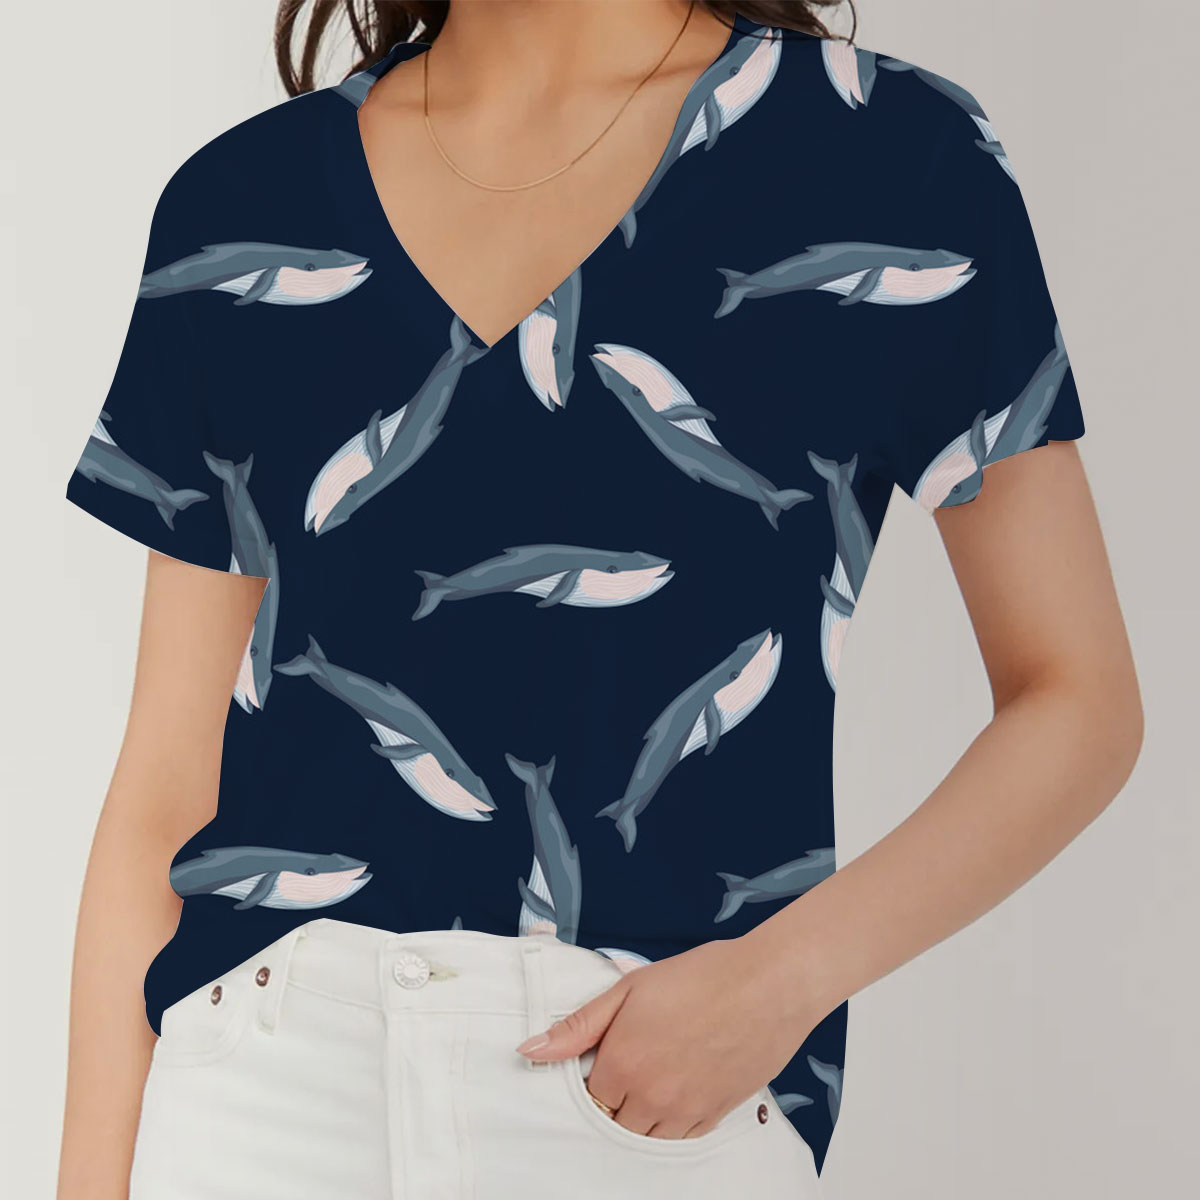 Blue Whale On Dark V-Neck Women's T-Shirt